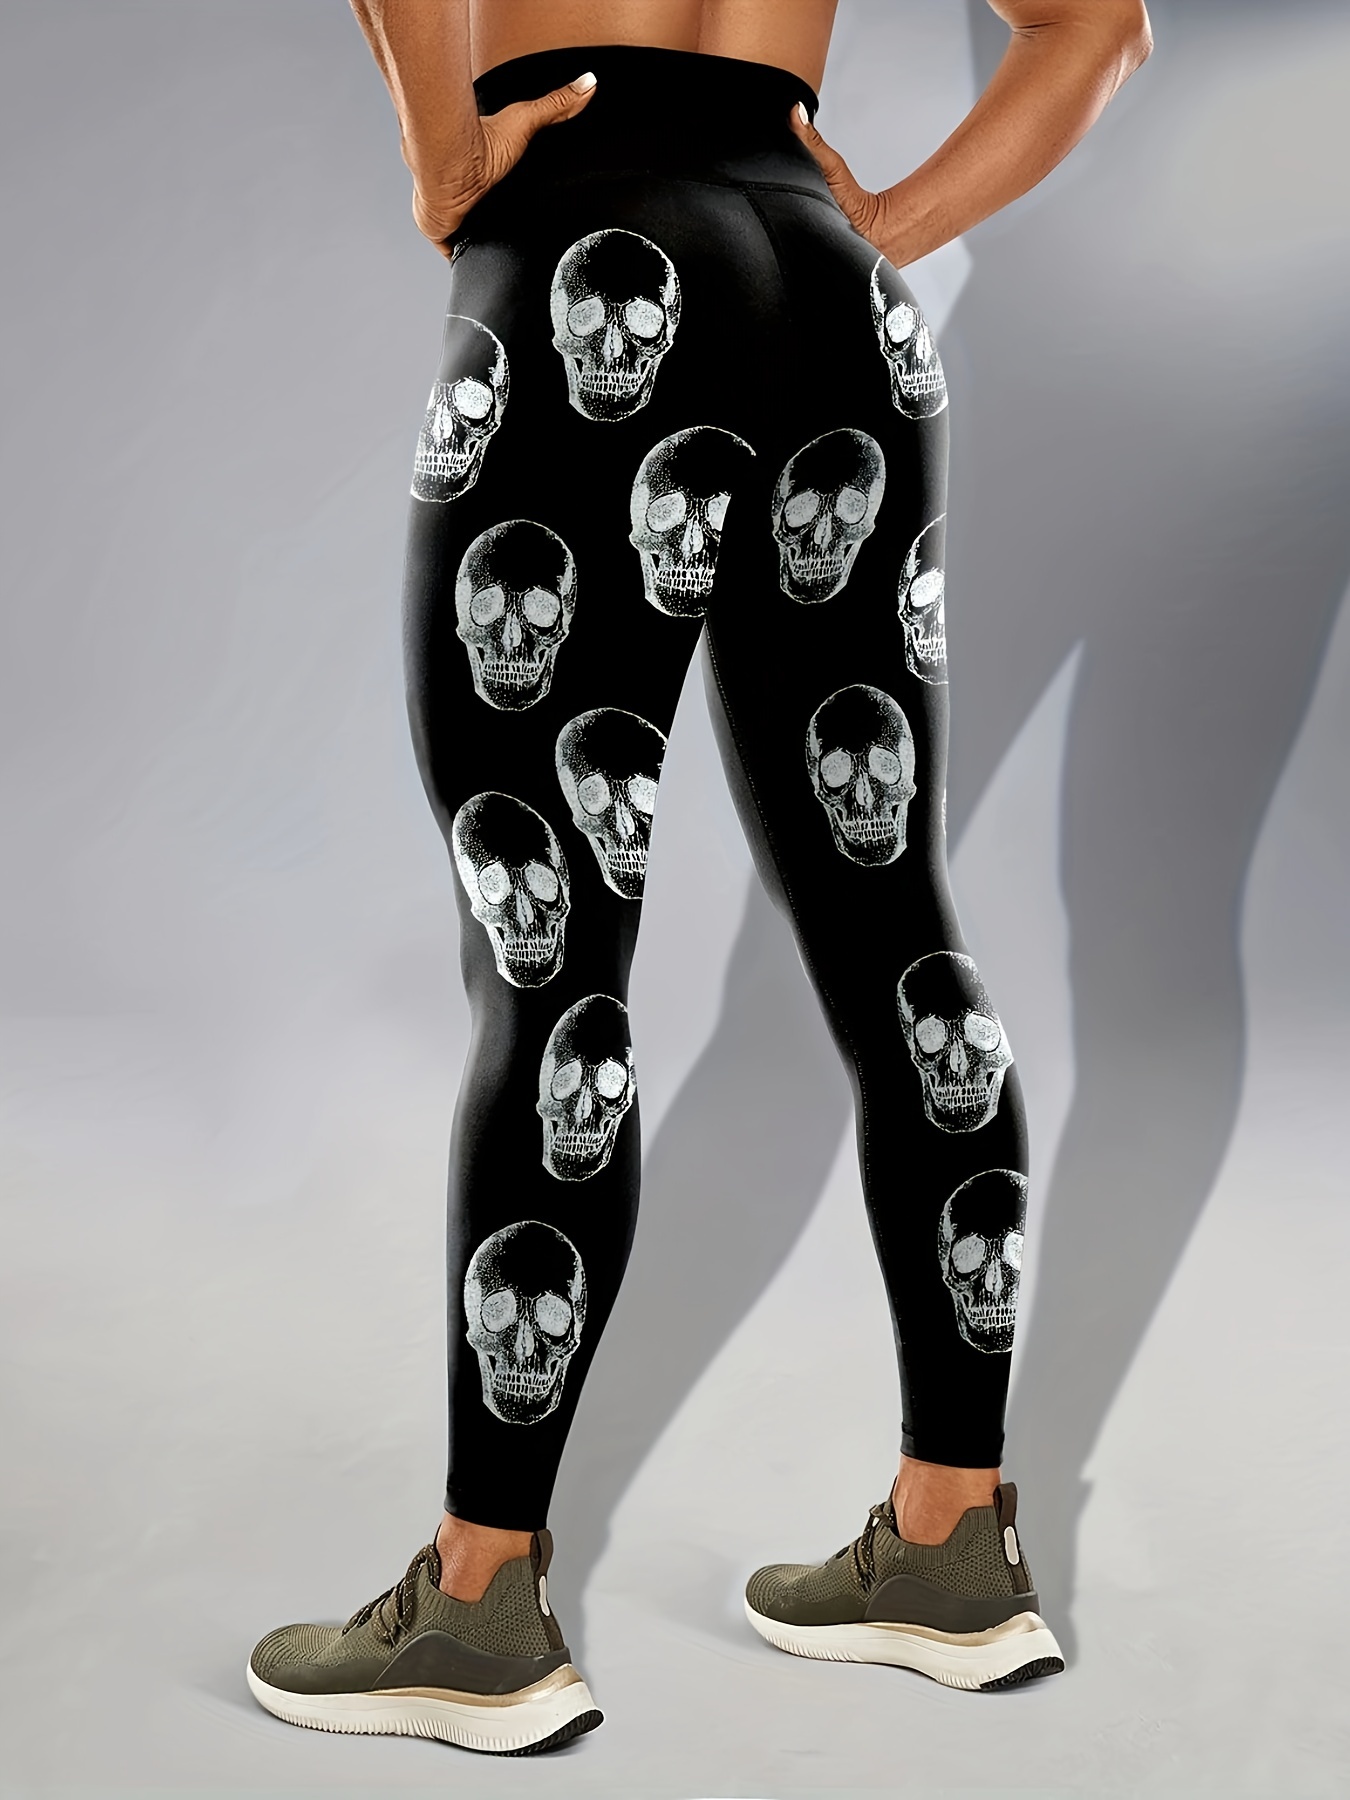 Why Do Leggings Fall Downhigh Waist Halloween Skull Print Leggings -  Women's Fitness Spandex Pants